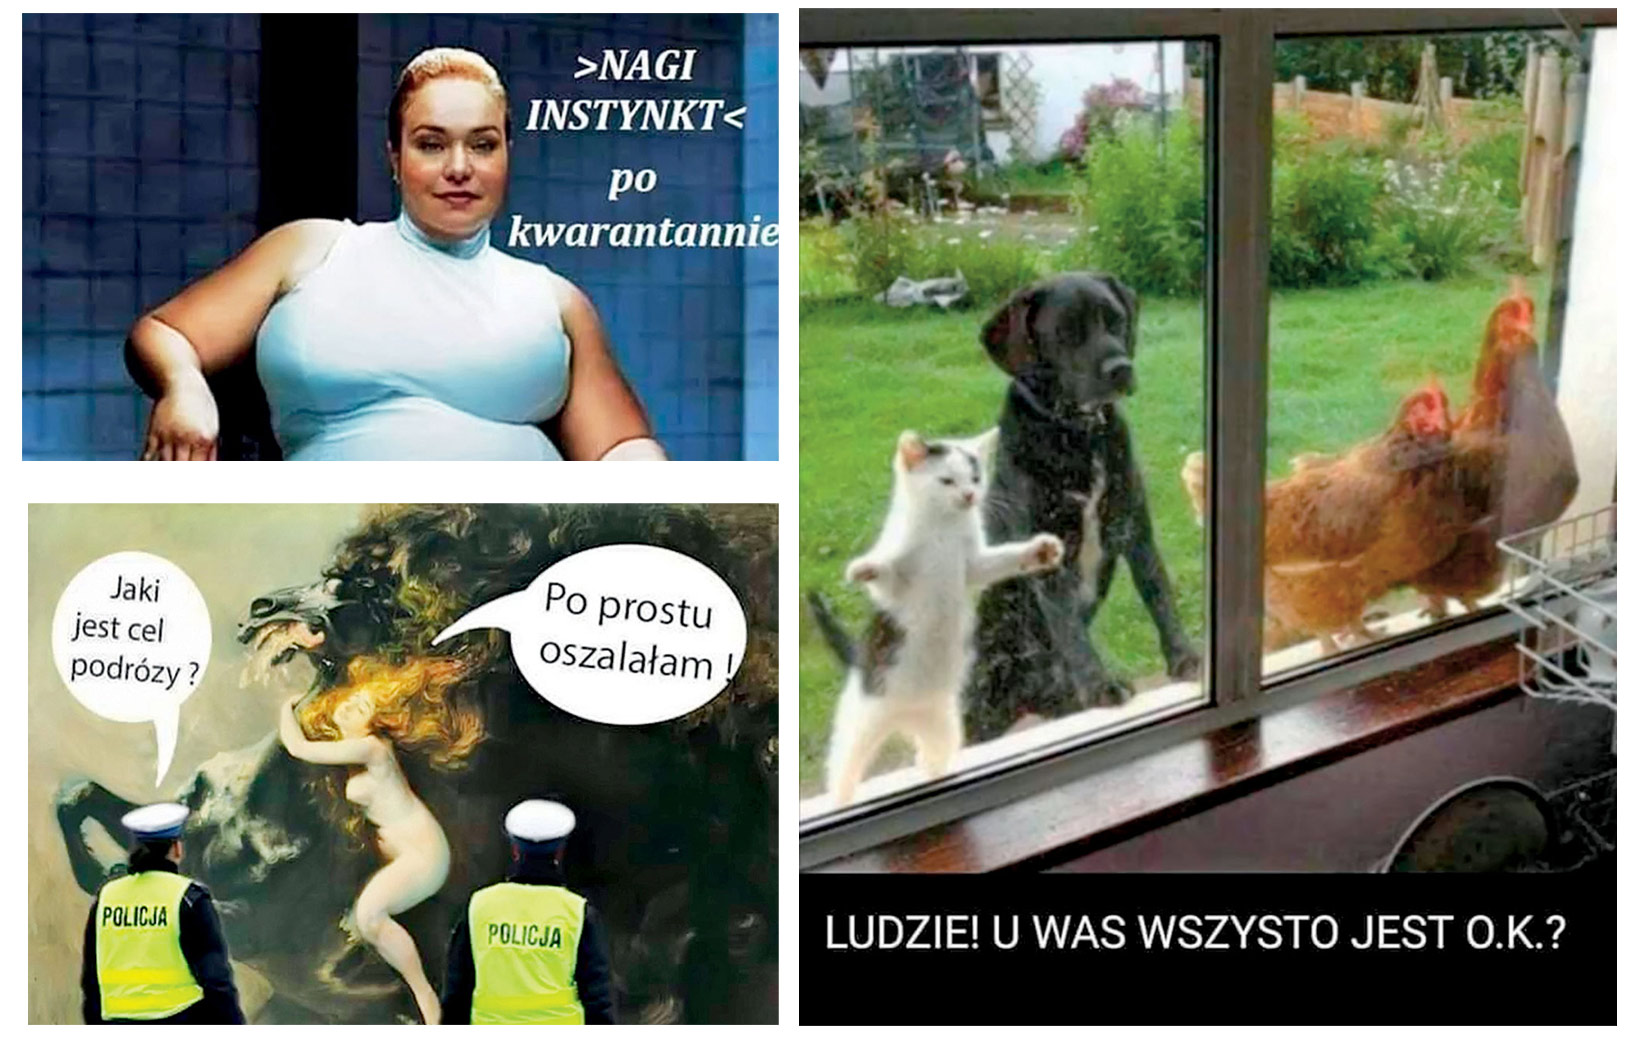 Humorem w pandemię | Śmiać się, by przetrwać - Polityka.pl